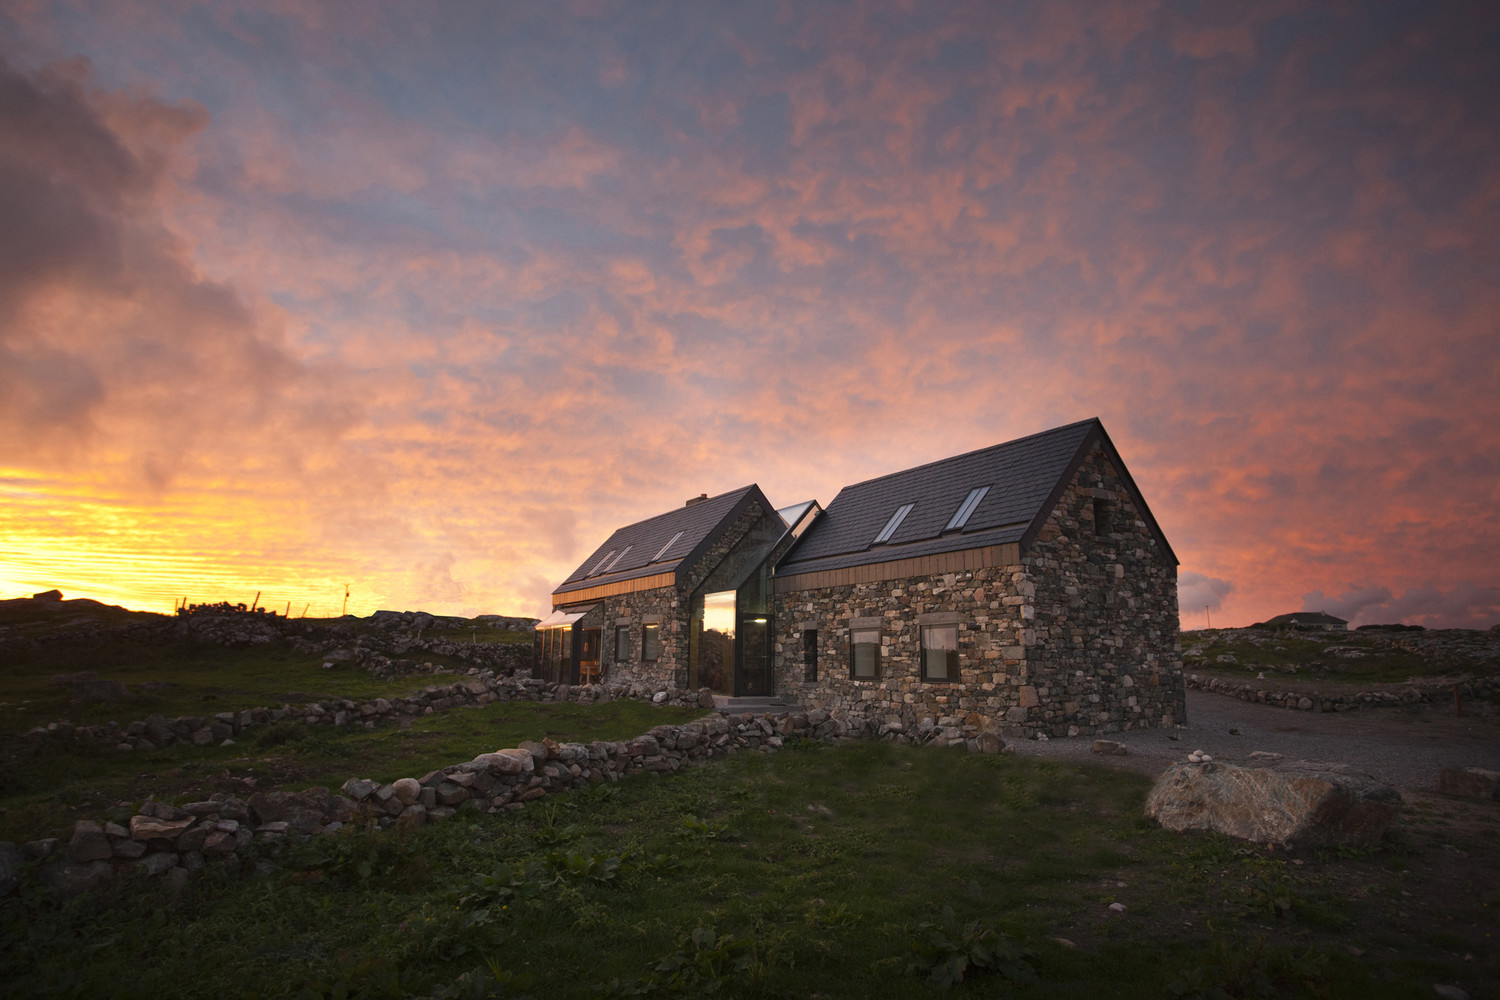 Rekonstrukcja opuszczonych domków na wybrzeżu Morza Irlandzkiego